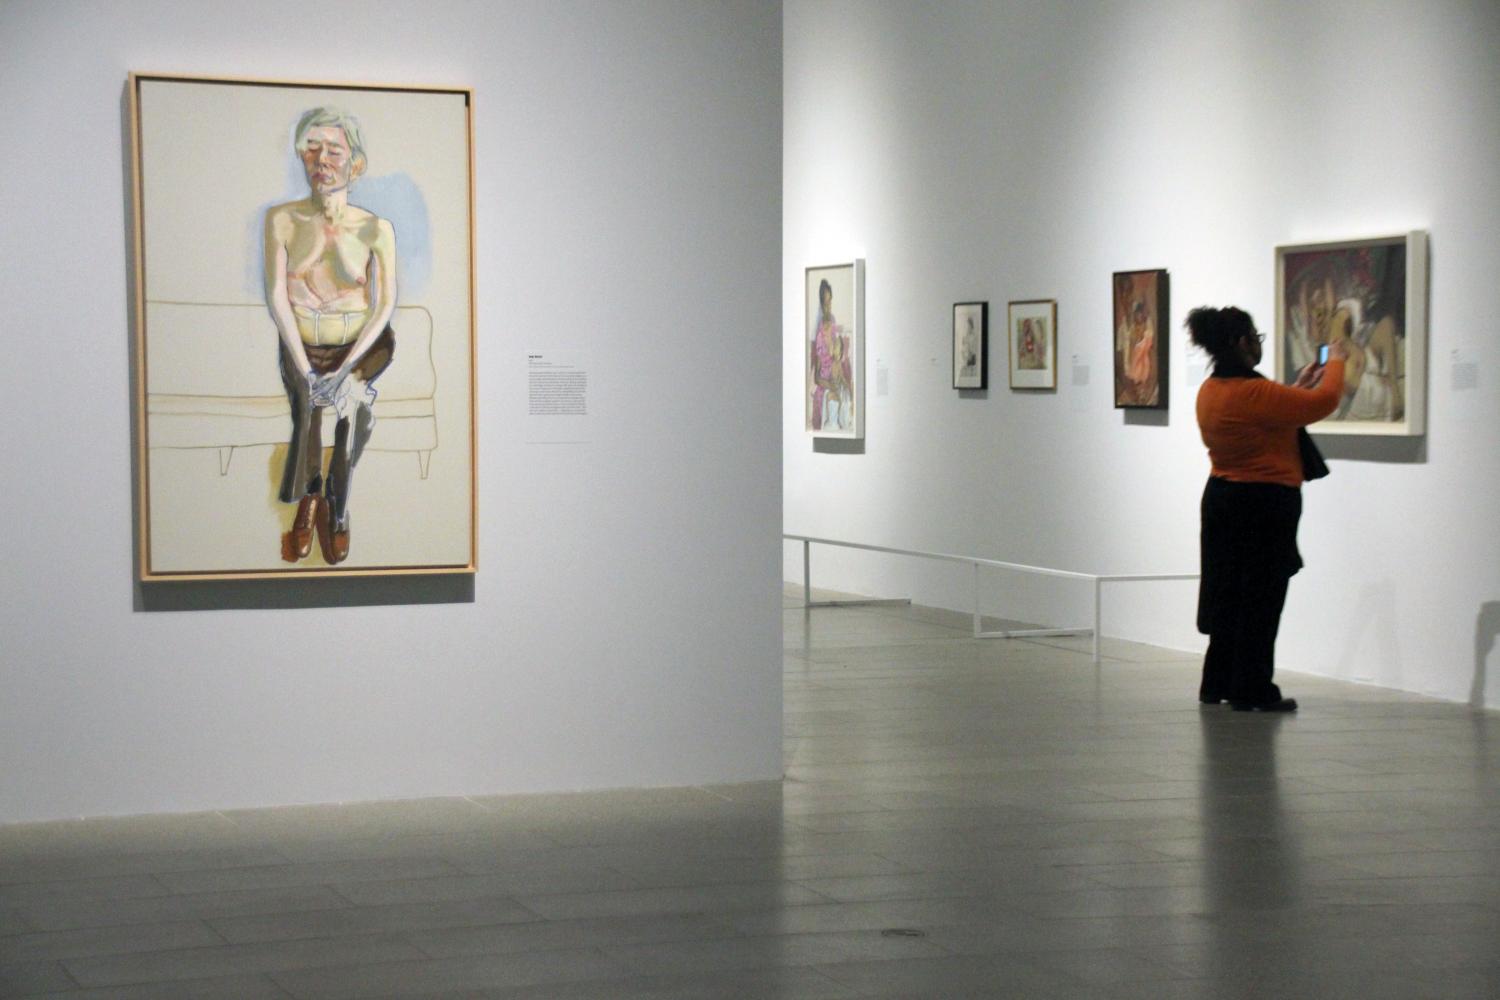 Besucherin in der Neel-Ausstellung im Metropolitan Museum, zu sehen auf dem Bild ist unter anderem auch das Werk "Andy Warhol"